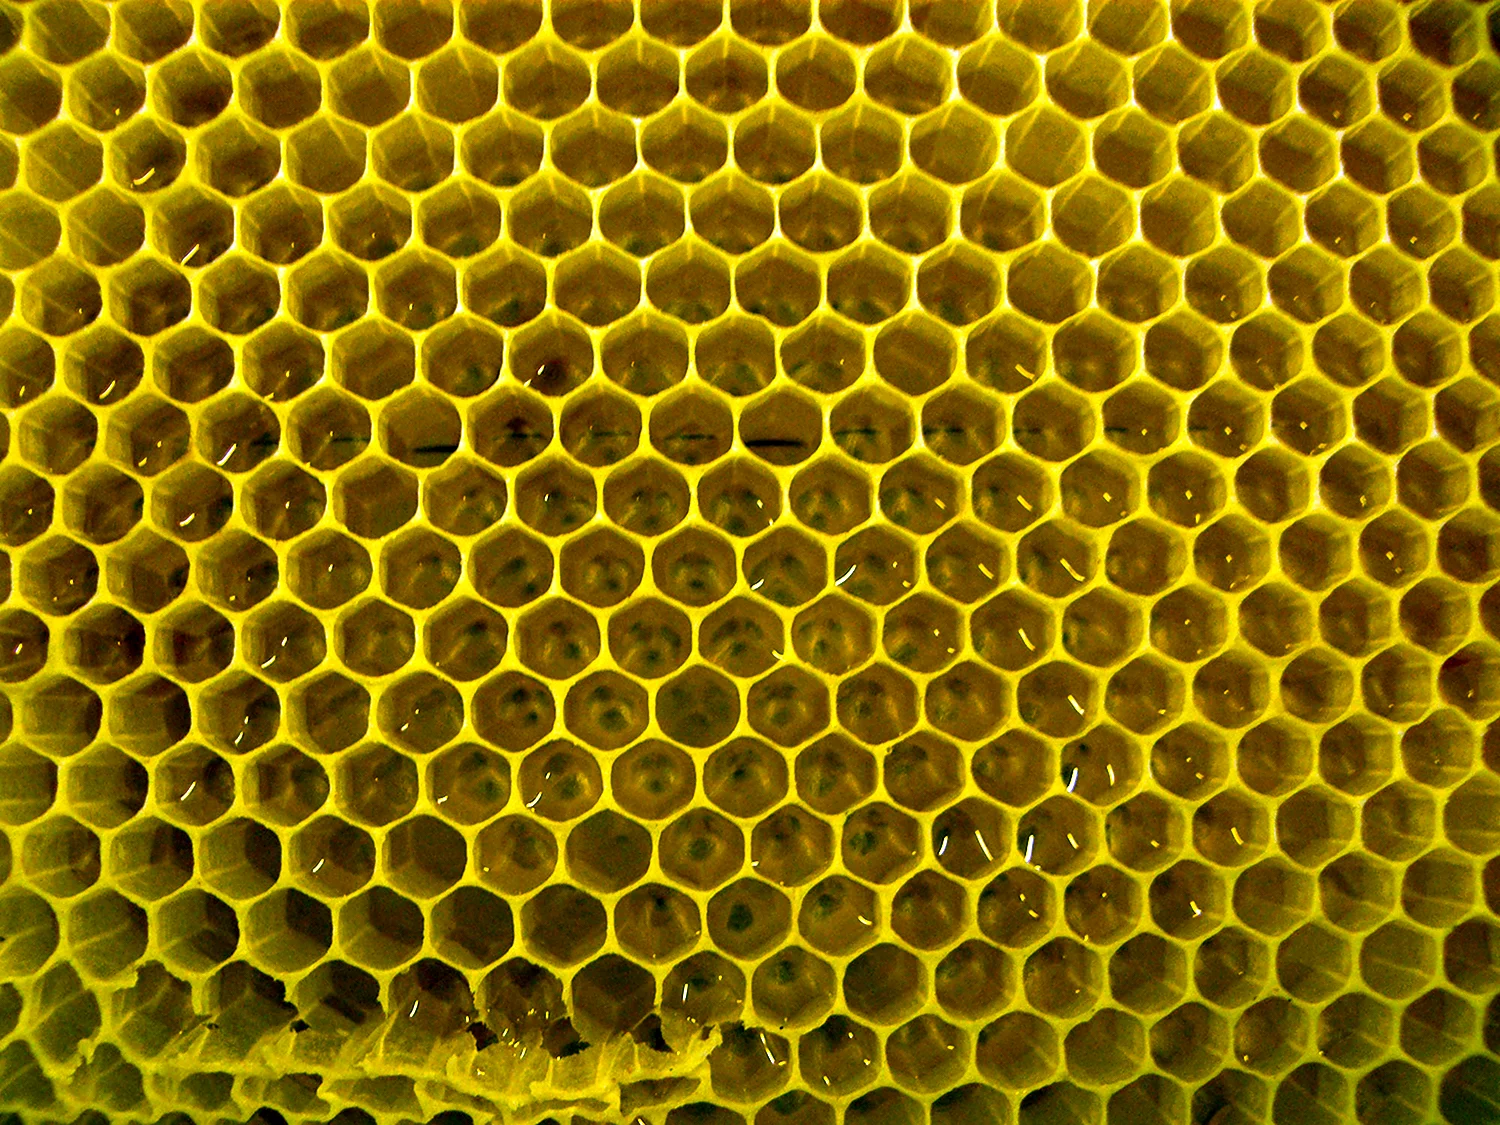 Пчелиные соты в природе